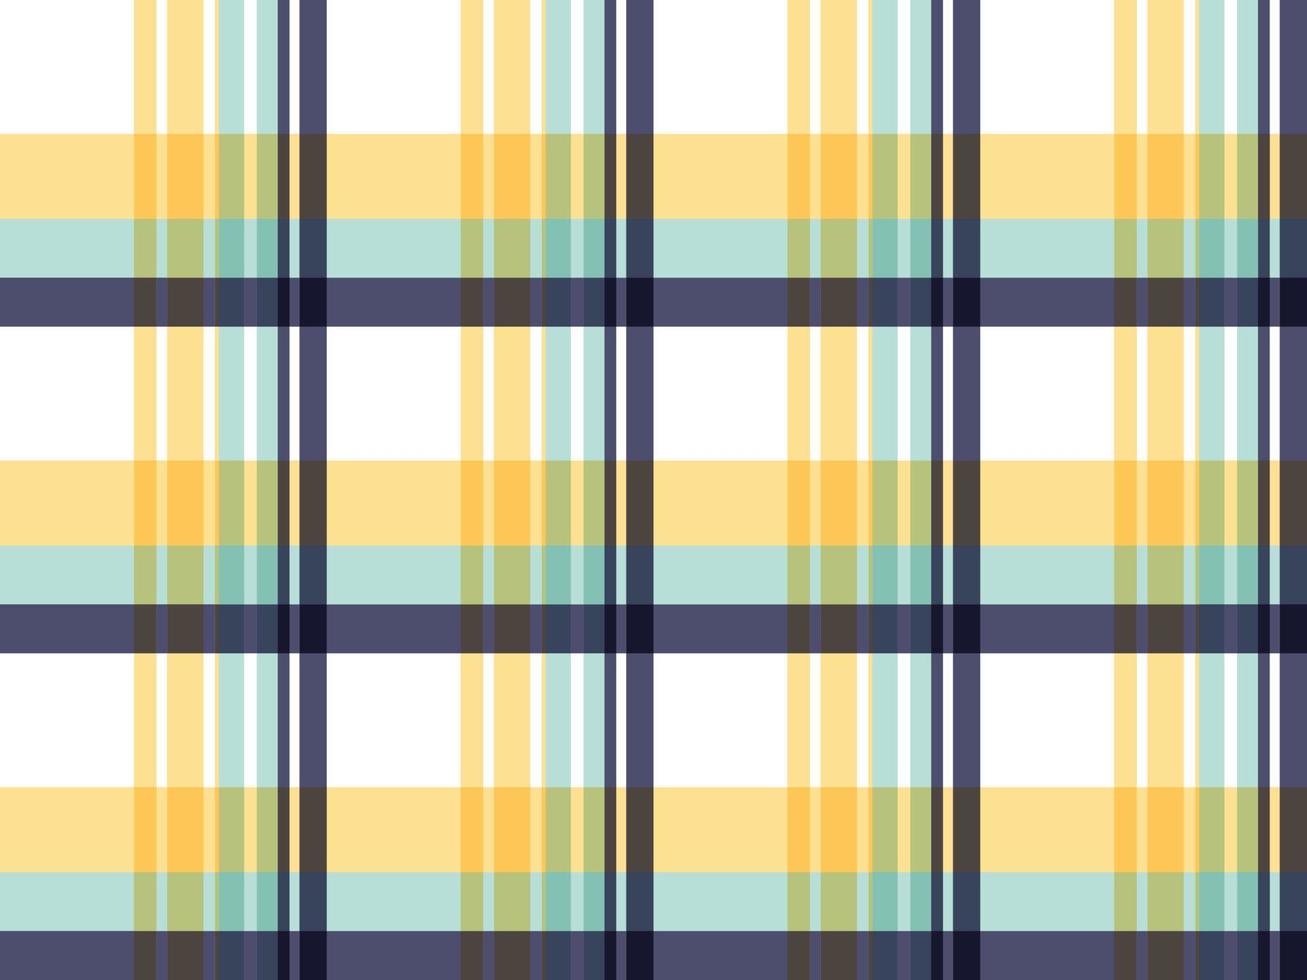 madras check argyle naadloze ruimte tartan print pastelkleur een patroon met felgekleurde strepen van verschillende dikte die elkaar kruisen om ongelijkmatige ruiten te creëren. meestal gebruikt op overhemden. vector